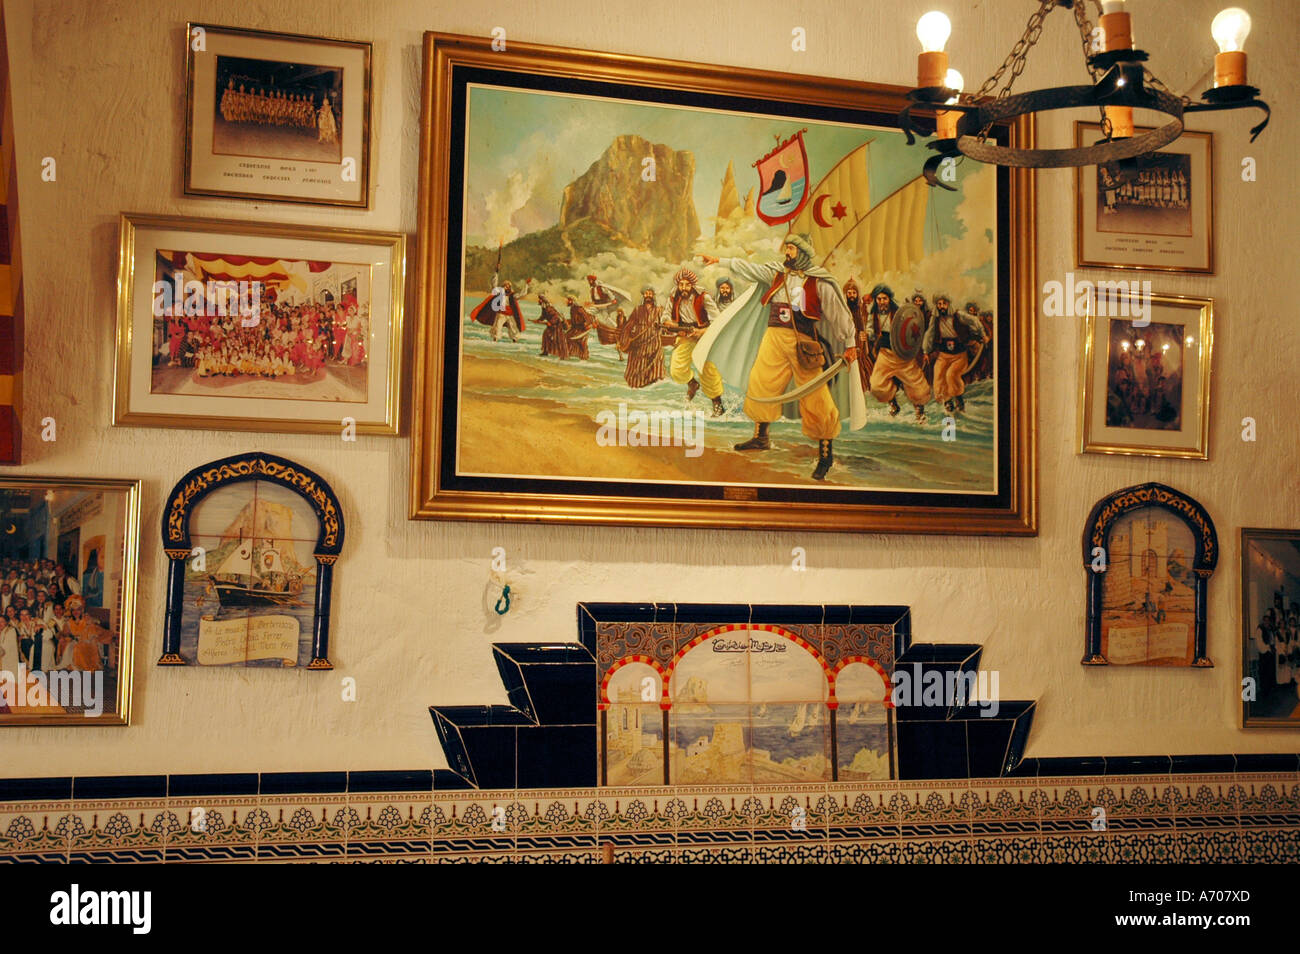 Foto a parete mostrano le lotte tra Mauren e cristiani, moros y cristianos, Calpe Costa Blanca, Spagna Foto Stock